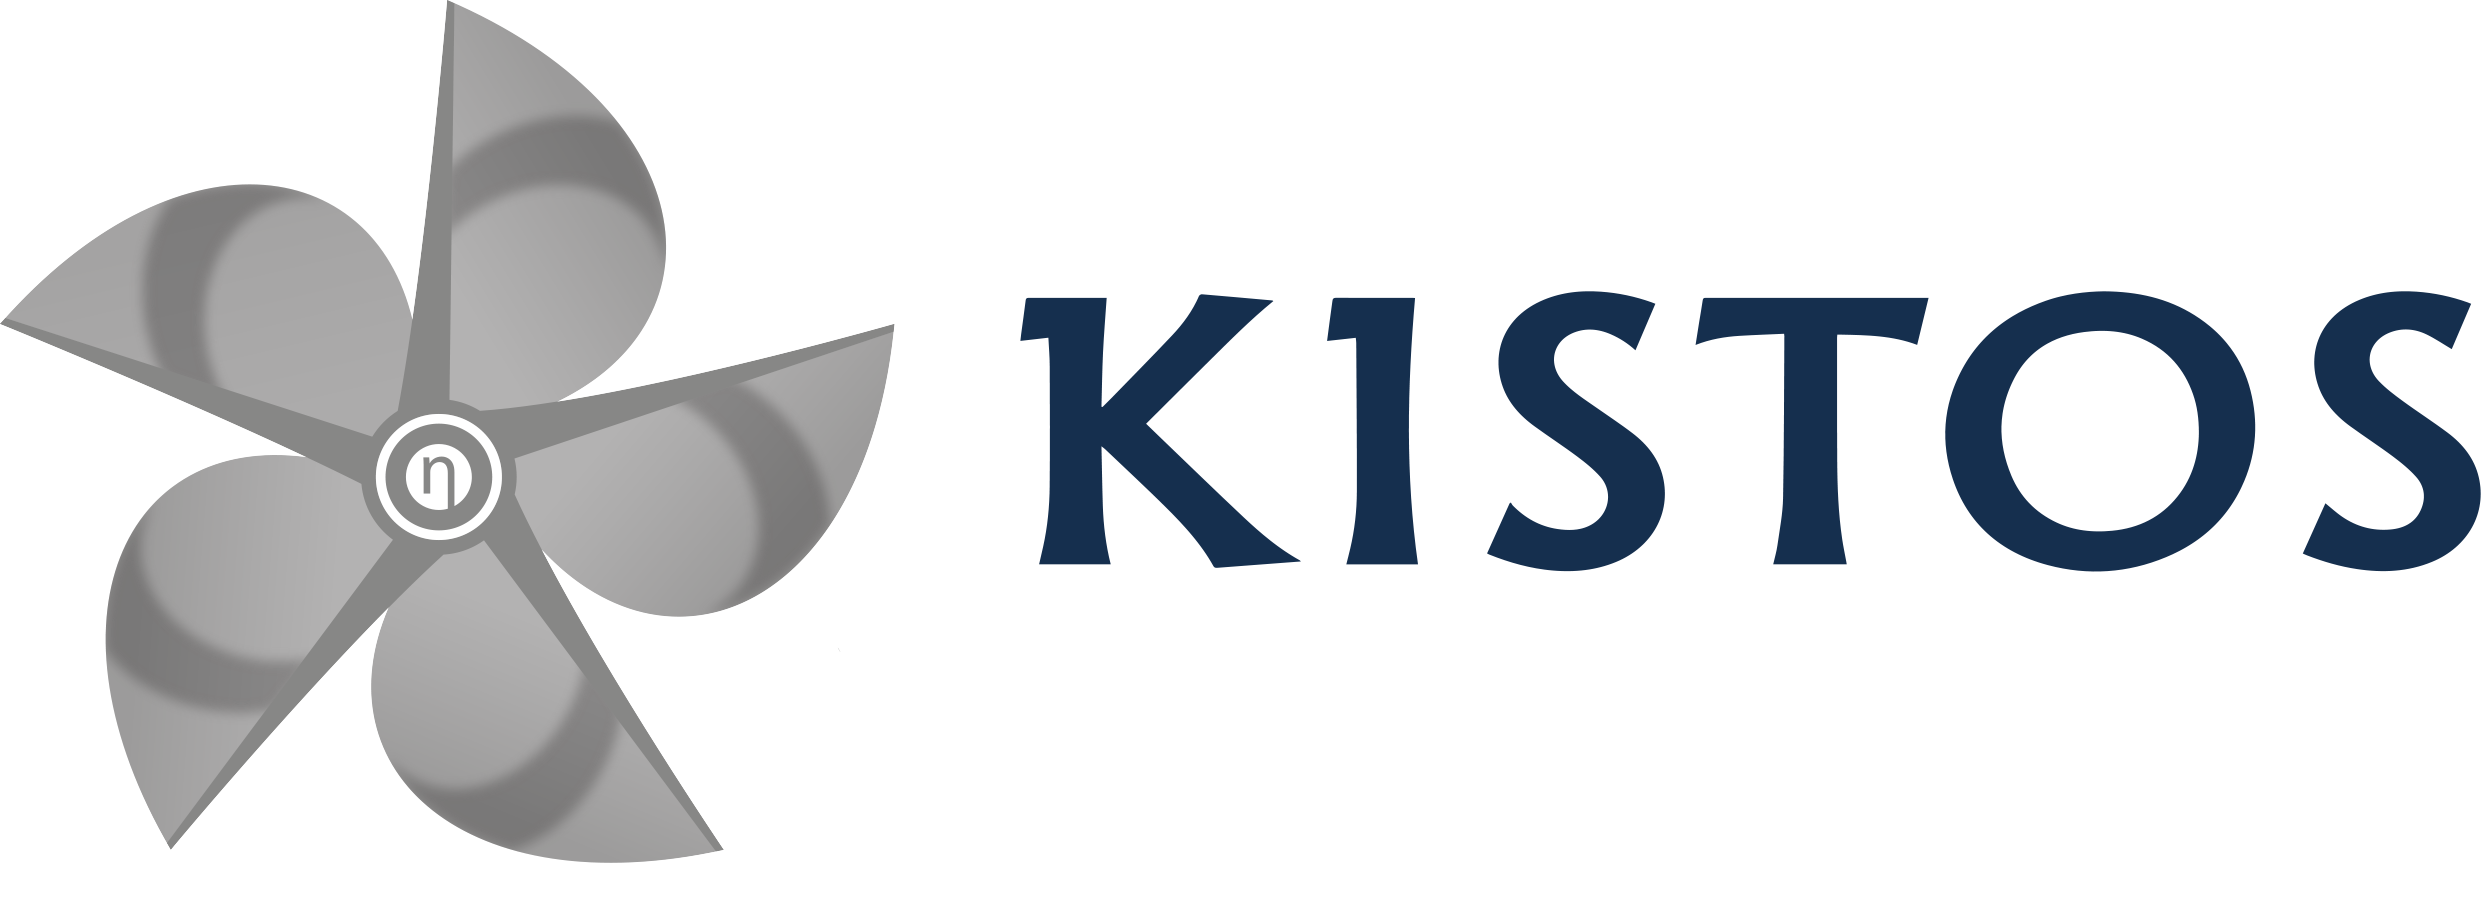 Kistos logo